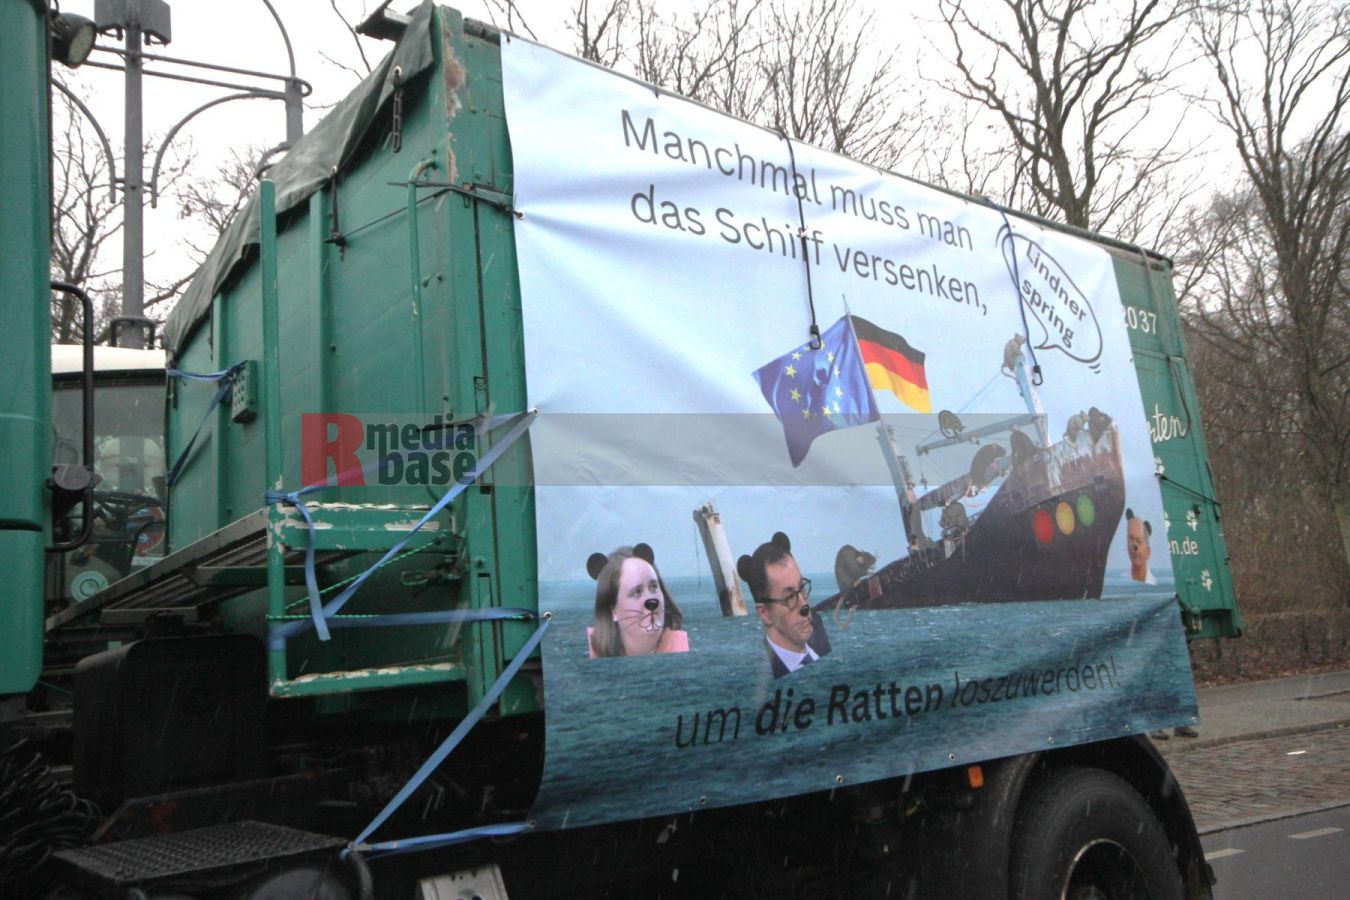 Bauernprotest in Berlin <i>Bild Denner/R-mediabase</i> <br><a href=/confor2/?bld=79017&pst=78995&aid=86&i1=Denner/R-mediabase>Download Bild 79017</a>  <br><a href=/?p=78995>Zum Beitrag 78995</a>